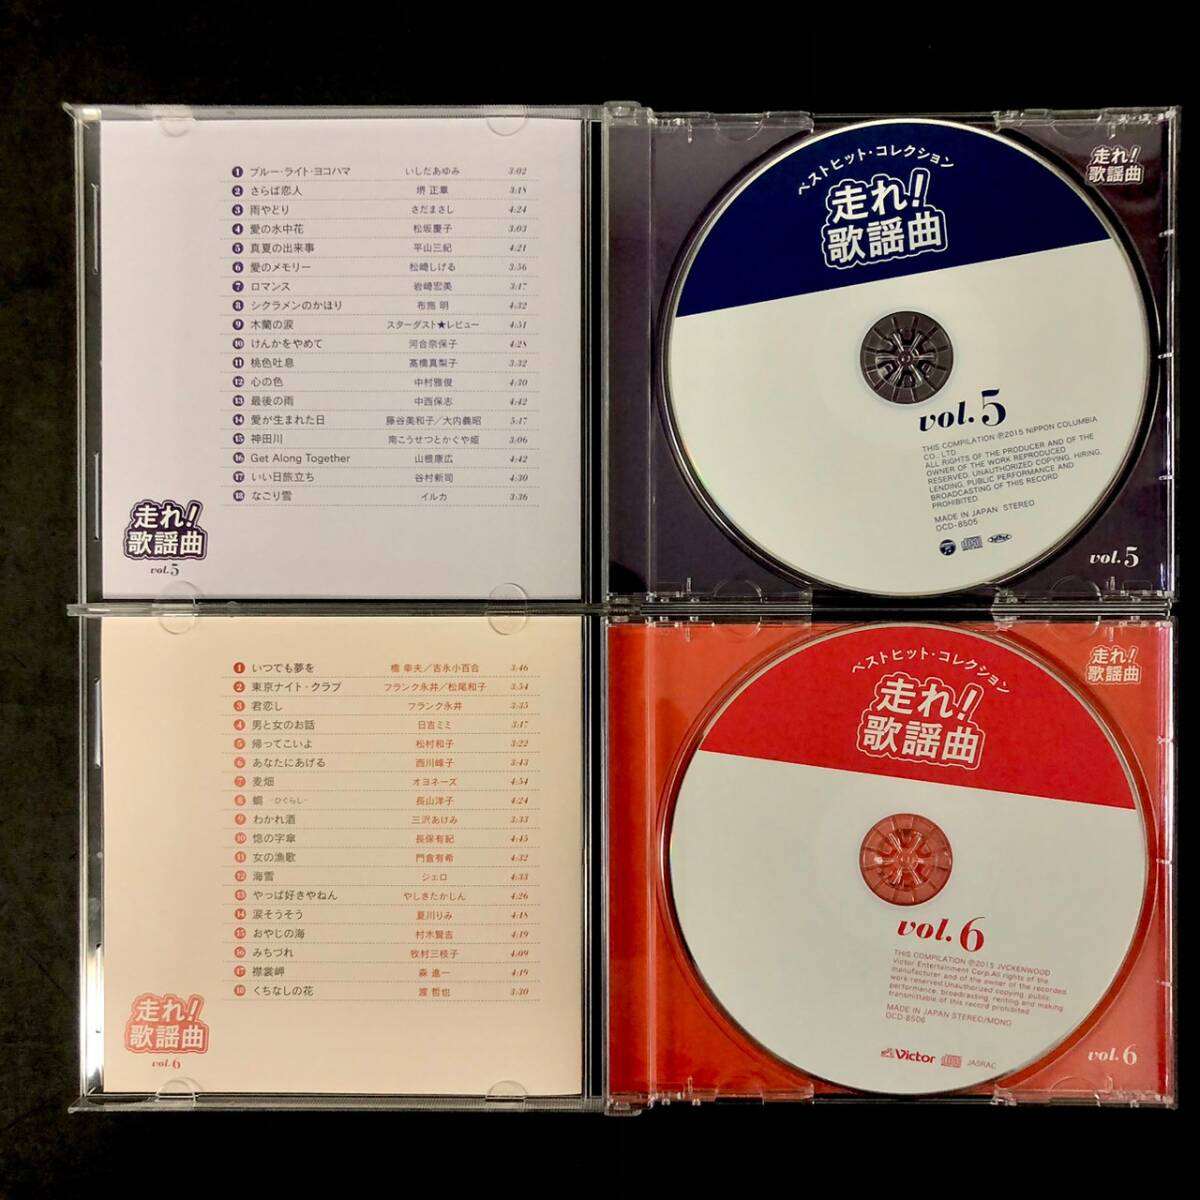 BDm111I 100 CD You can пробег .! песня искривление весь суммировать кейс для хранения оценка альбом .. сборник караоке CD имеется Matsuda Seiko Yamaguchi Momoe Yoshinaga Sayuri 